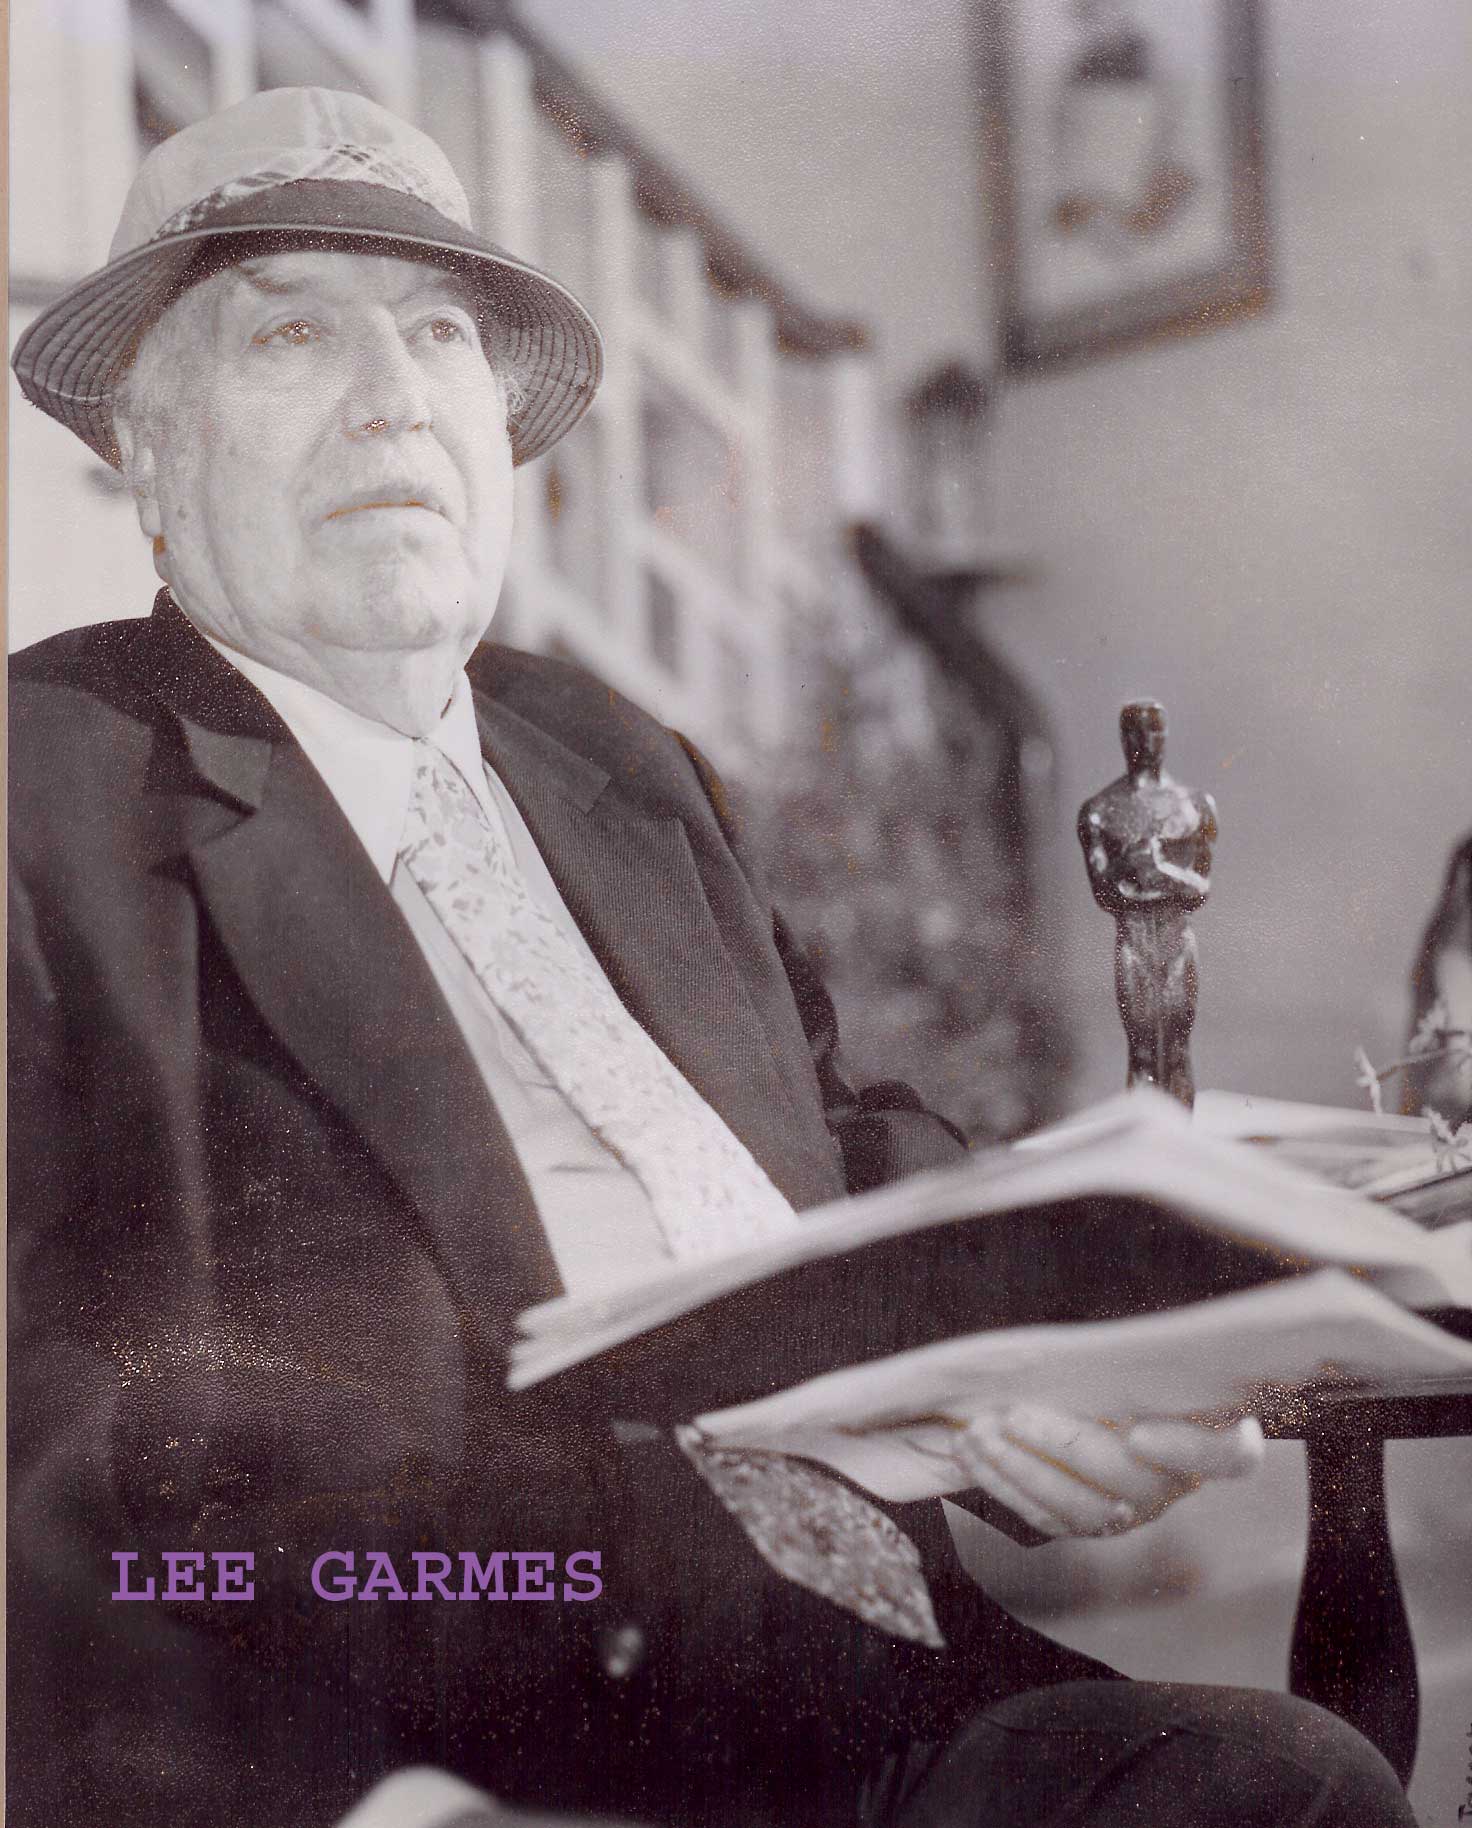 Lee Garmes